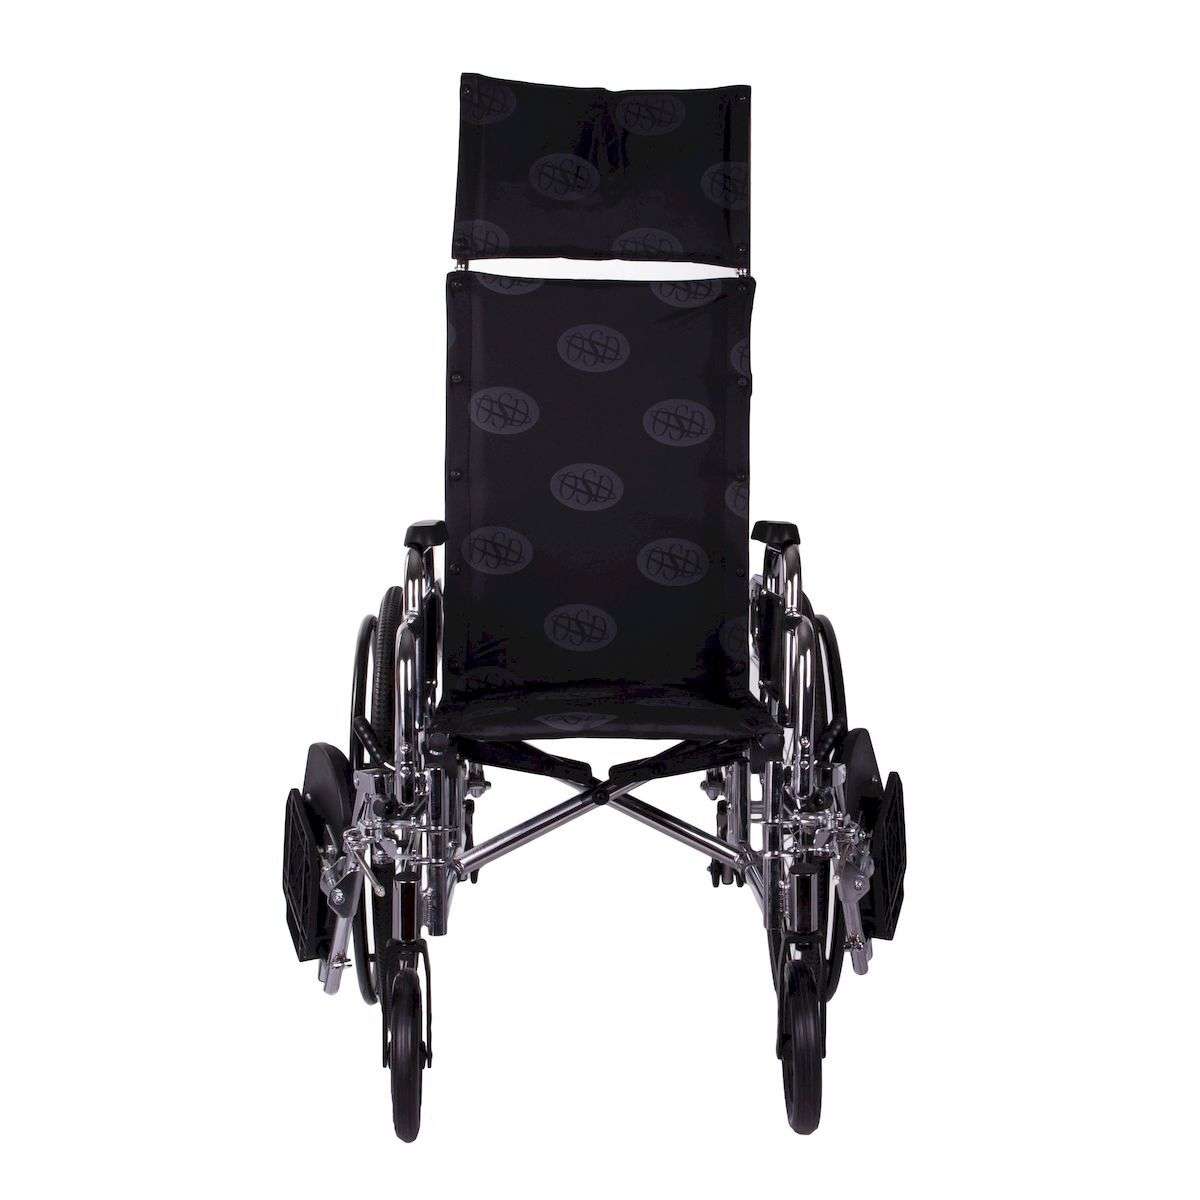 Многофункциональная инвалидная коляска OSD Recliner Millenium